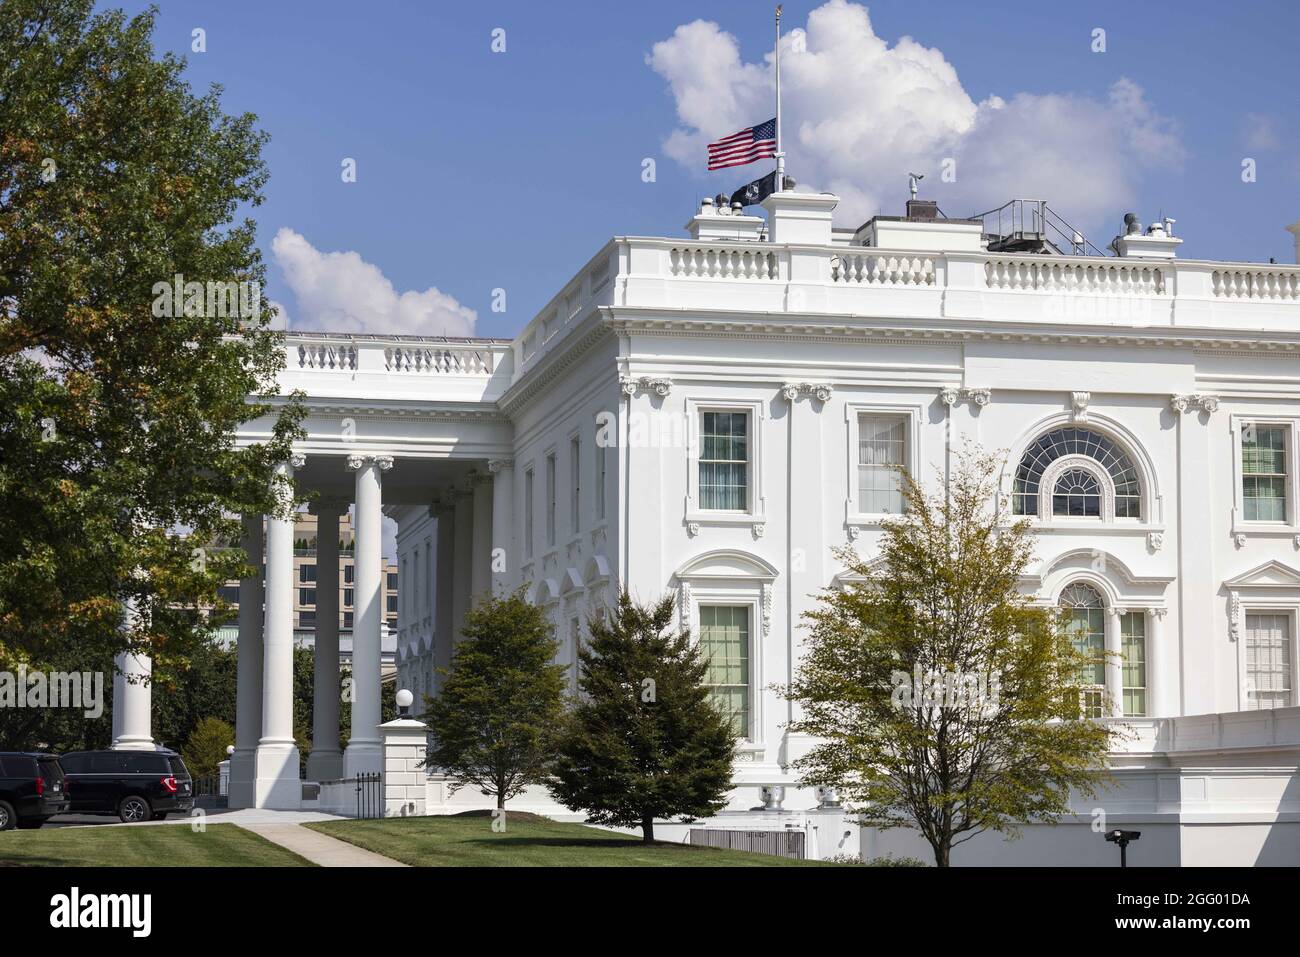 La bandiera degli Stati Uniti vola a metà del personale sopra la Casa Bianca a Washington, DC, USA, 27 agosto 2021. Un attentatore suicida dell'ISIS-K ha ucciso più di 100 persone, tra cui 13 truppe statunitensi, al di fuori dell'aeroporto internazionale Hamid Karzai di Kabul, in Afghanistan, il 26 agosto. Foto Stock